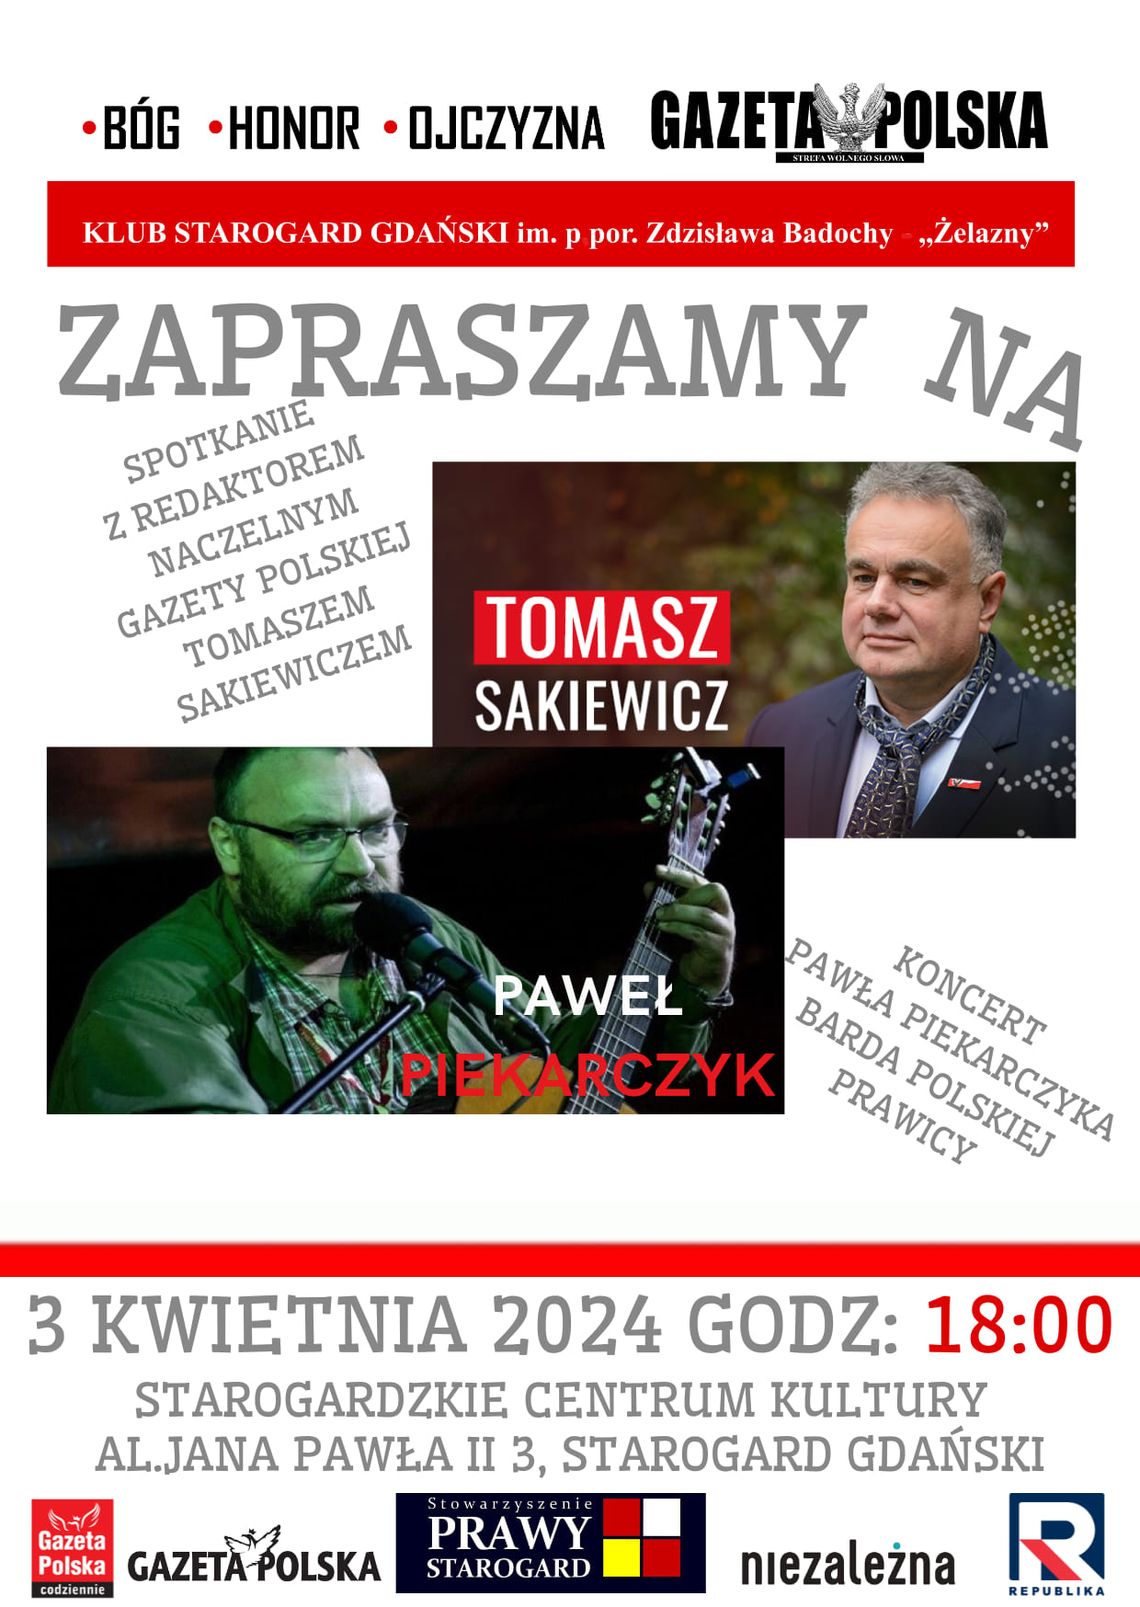 Spotkanie z Tomaszem Sakiewiczem i koncert gitarowy barda Pawła Piekarczyka